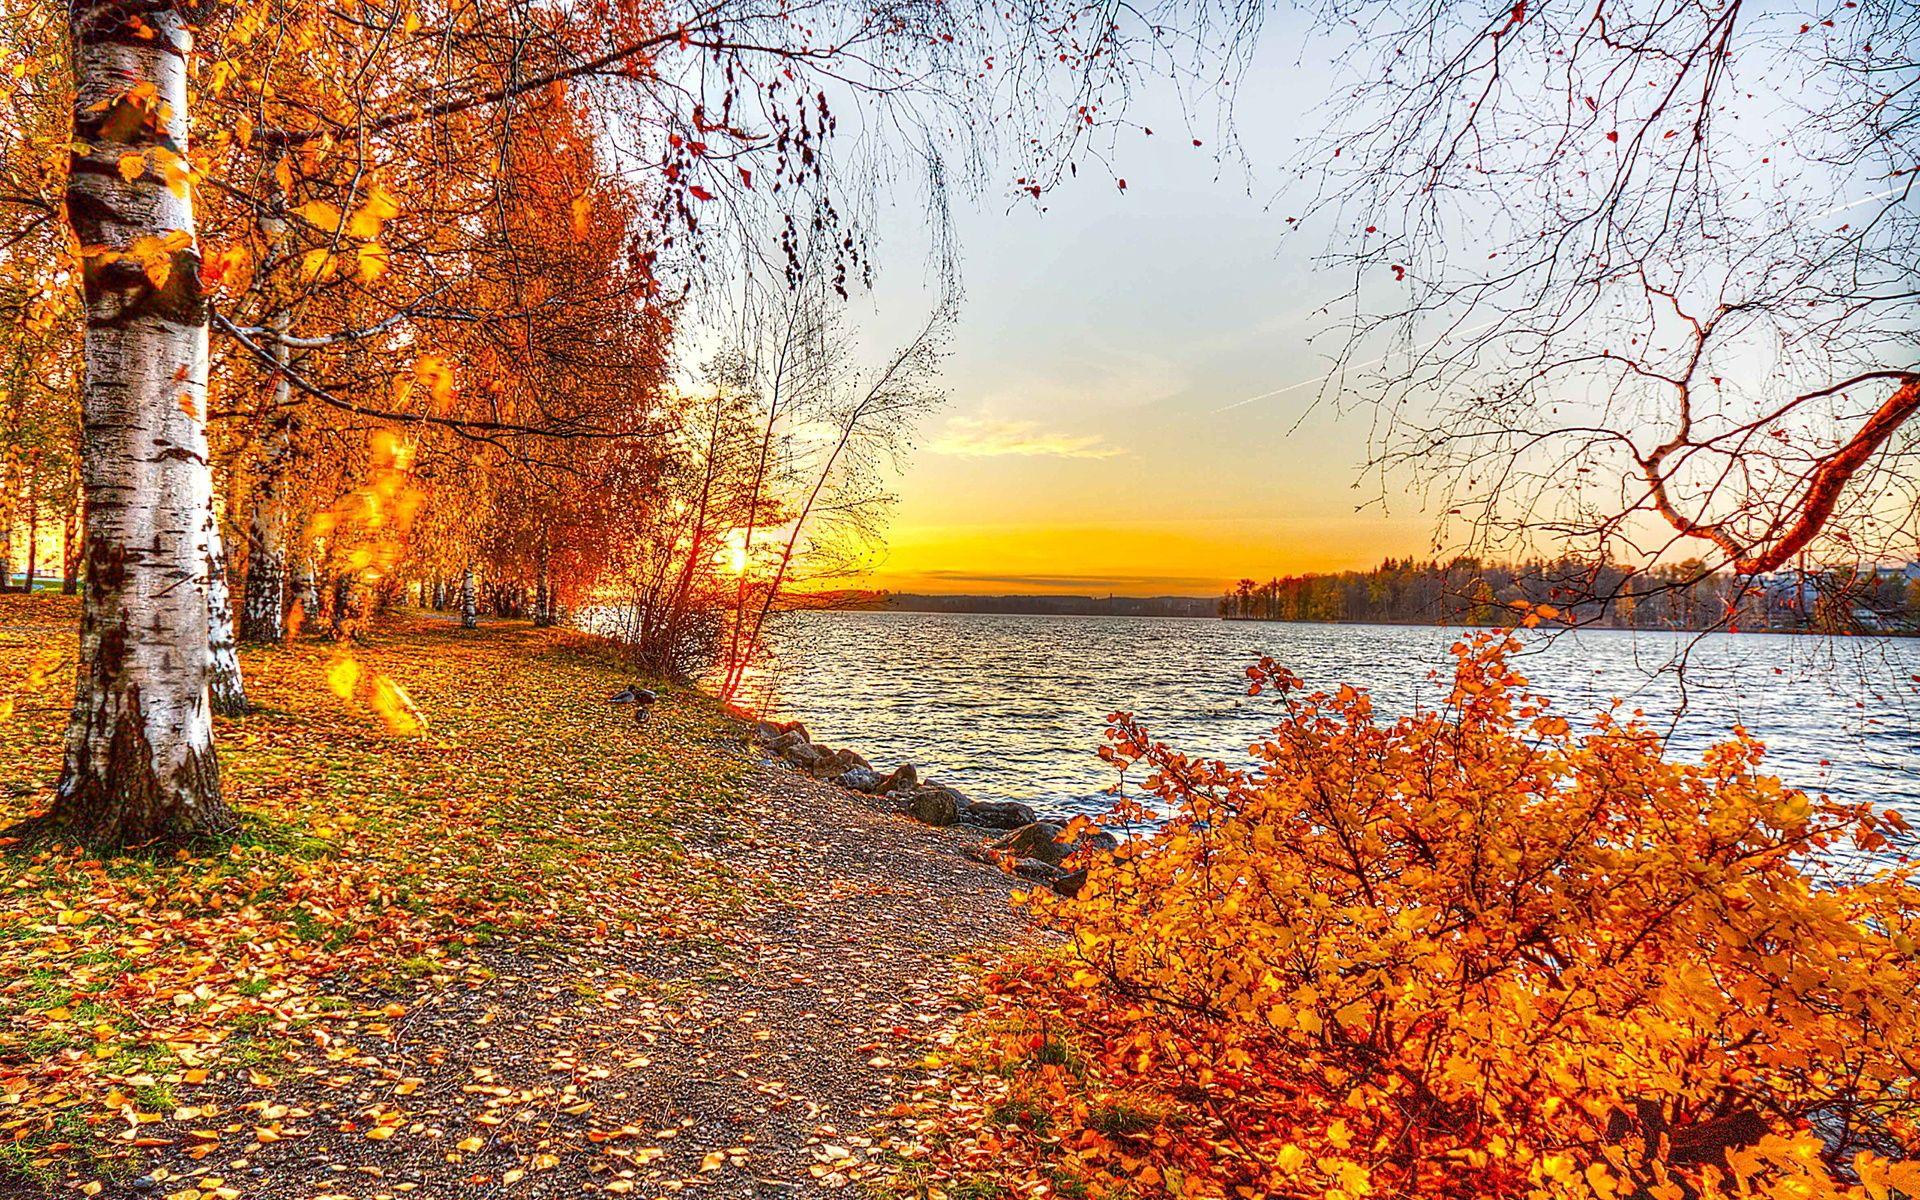 solar #autumn #sunset. Autumn Sunsets. Autumn lake, Sunset